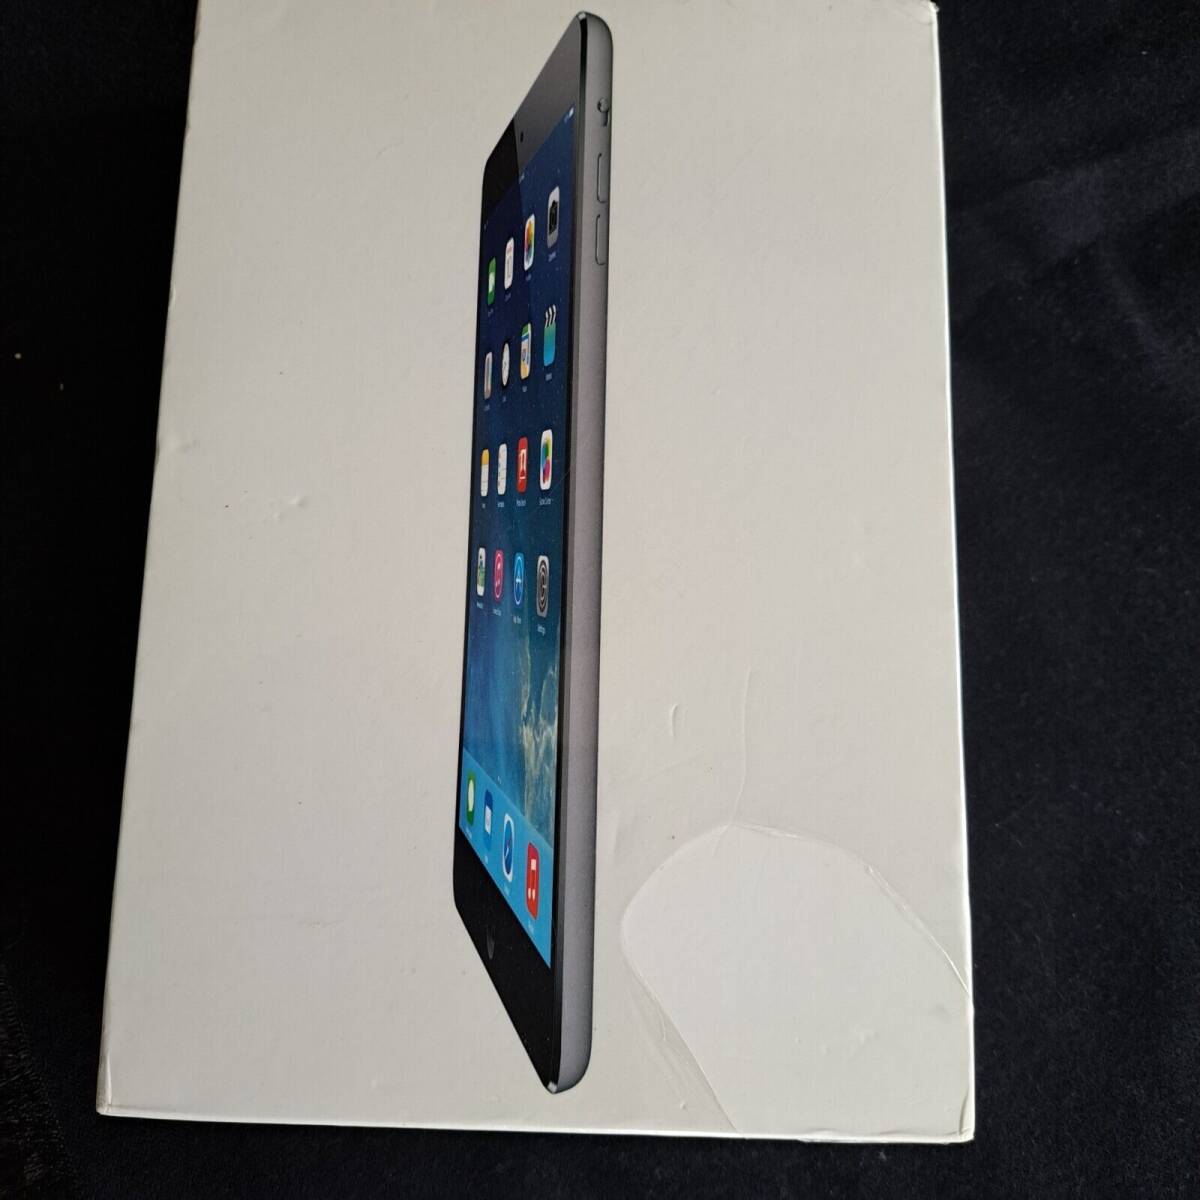 Apple iPad Mini MF-432LL/A 16GB Wi-Fi - Gray Model A-1432 New In Sealed Box 海外 即決_Apple iPad Mini MF 2